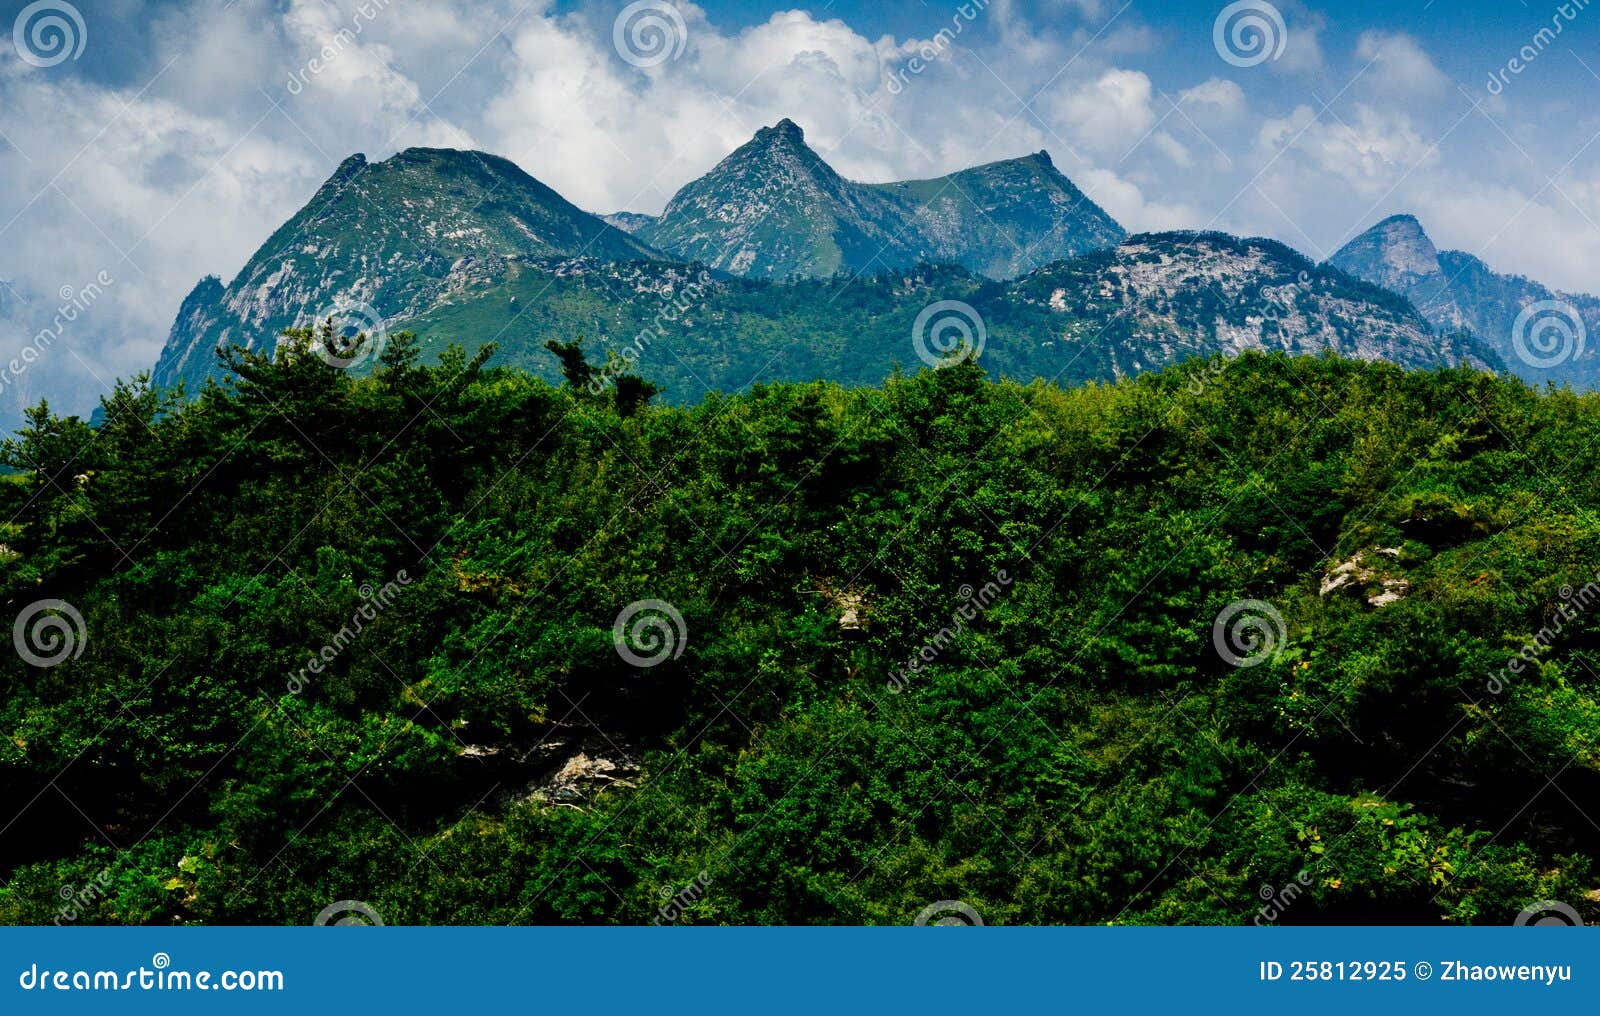 the buckhorn ridge of qinling mountain